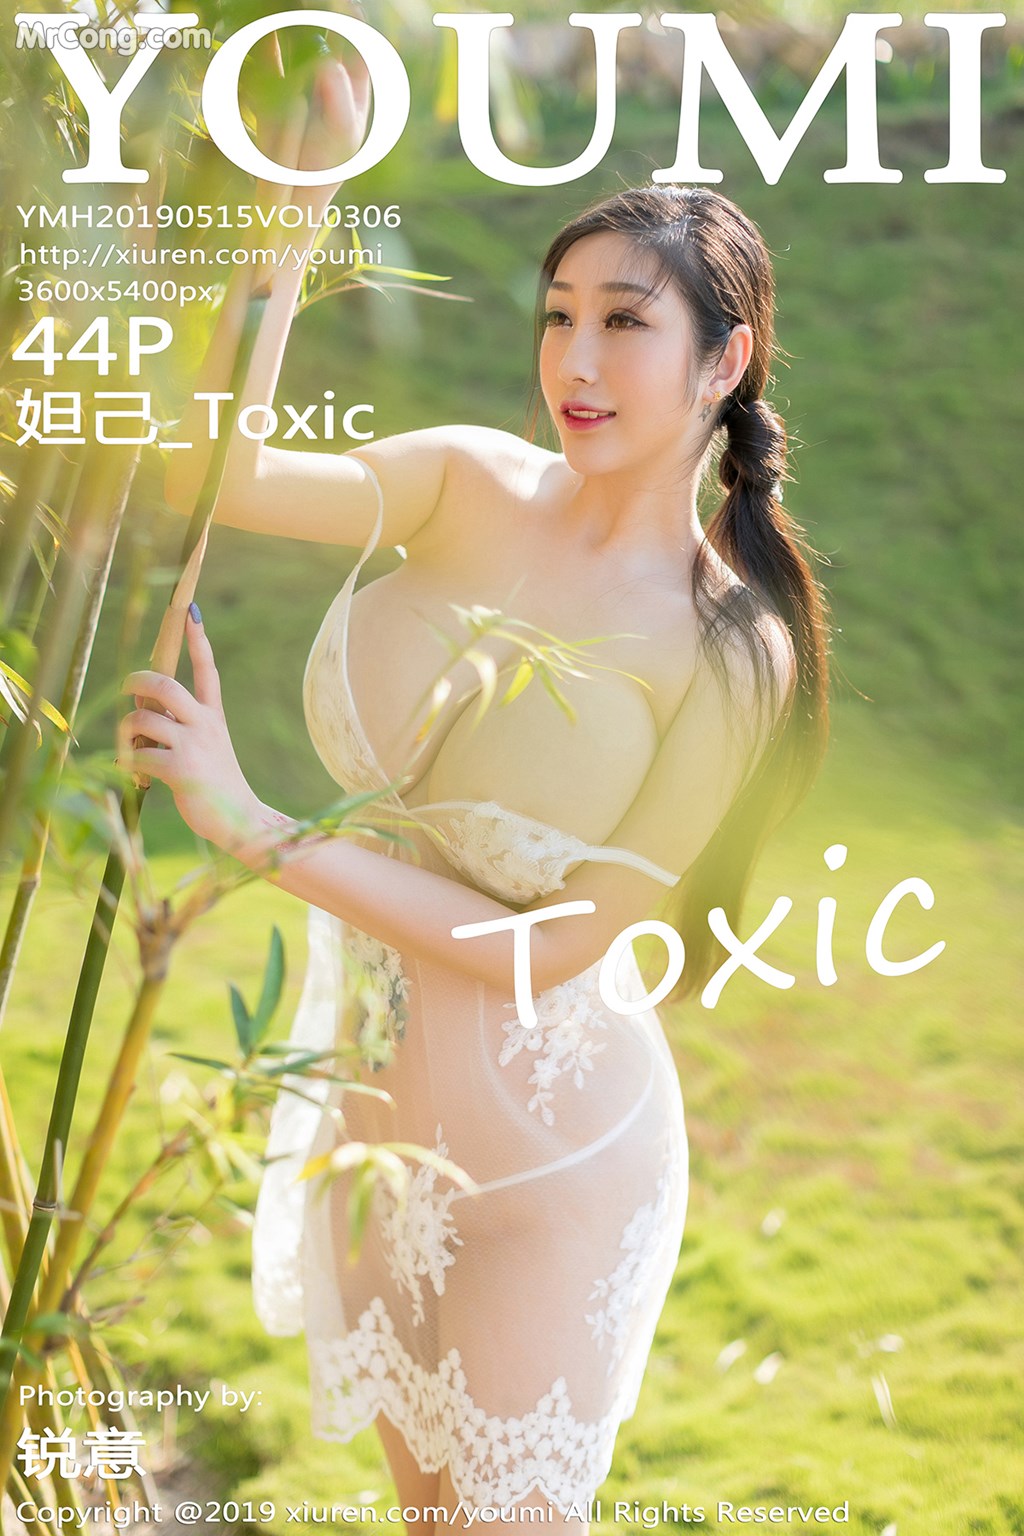 YouMi Vol.306: Daji_Toxic (妲 己 _Toxic) (45 pictures) photo 1-0